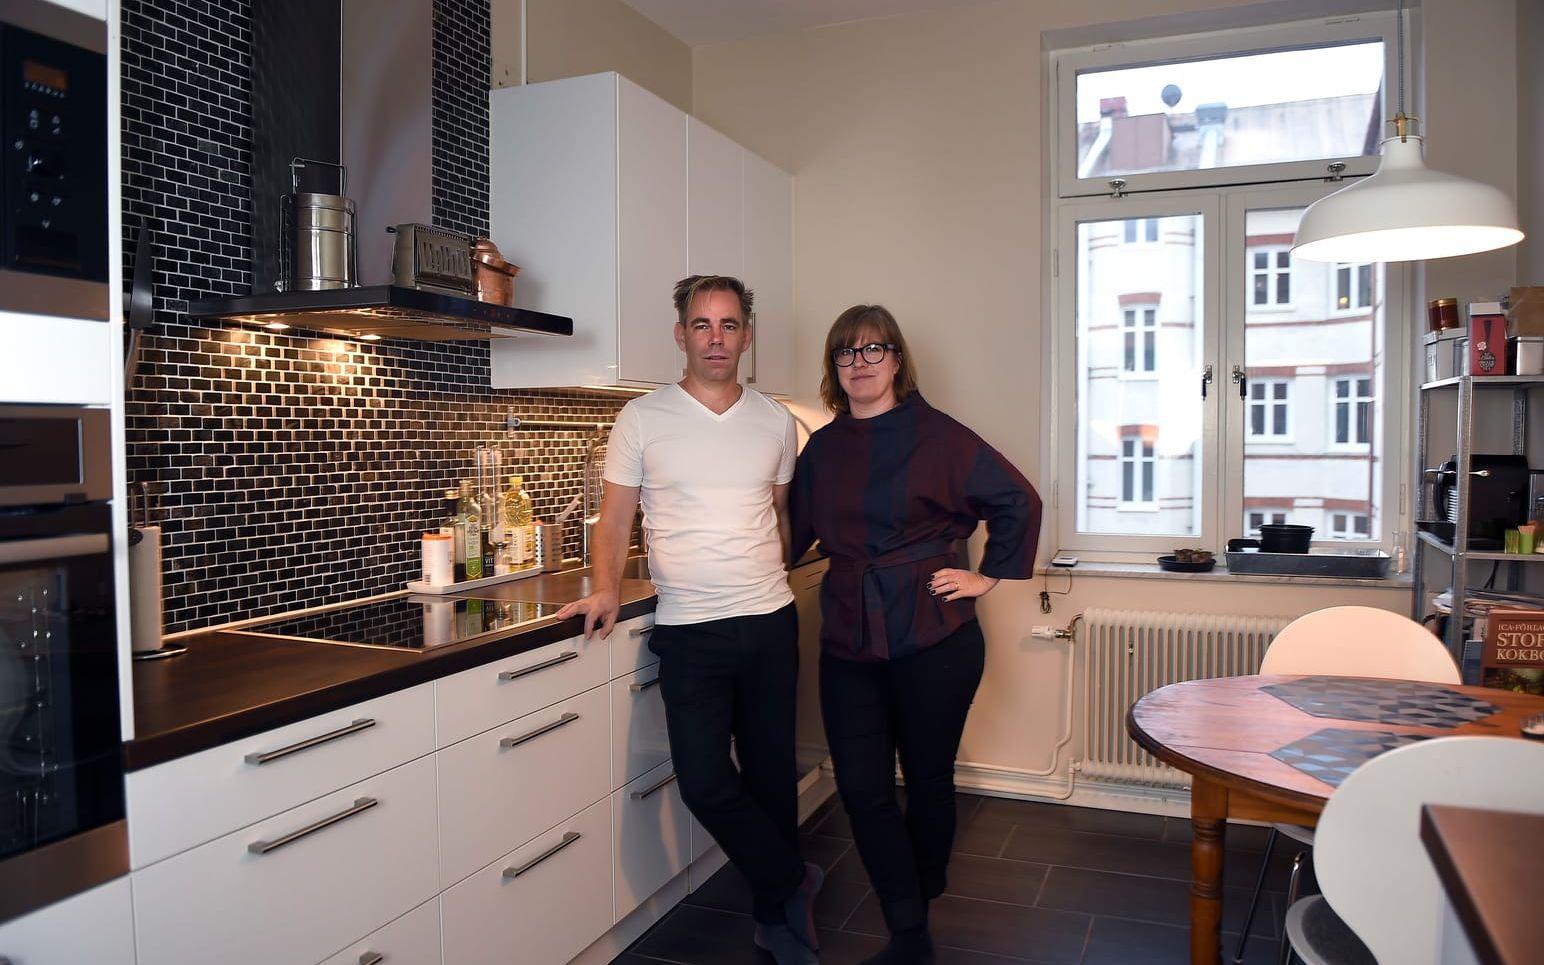 Ett av parets krav när de letade lägenhet i Malmö var att köket inte fick vara för litet, trots att själva lägenheten är ganska liten. Båda tycker om att laga mat, och ville inte kompromissa bort umgänget i köket. Foto: Björn Lindgren/TT